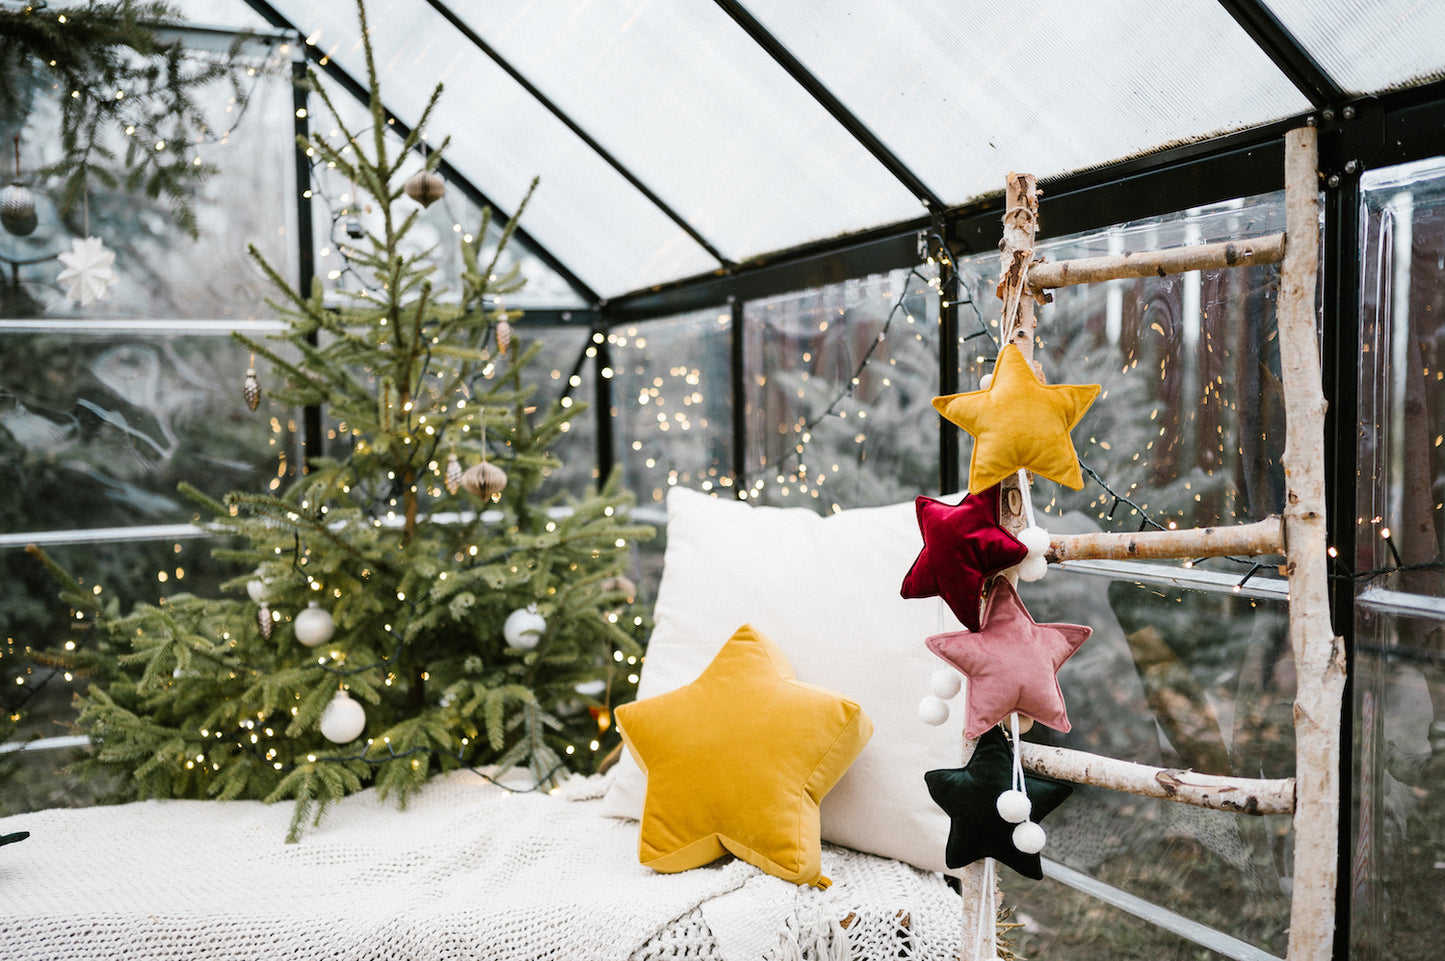 małe zawieszki gwiazdki wiszące w oranżerii obok kanapy i choinki jako ozdoba świąteczna 